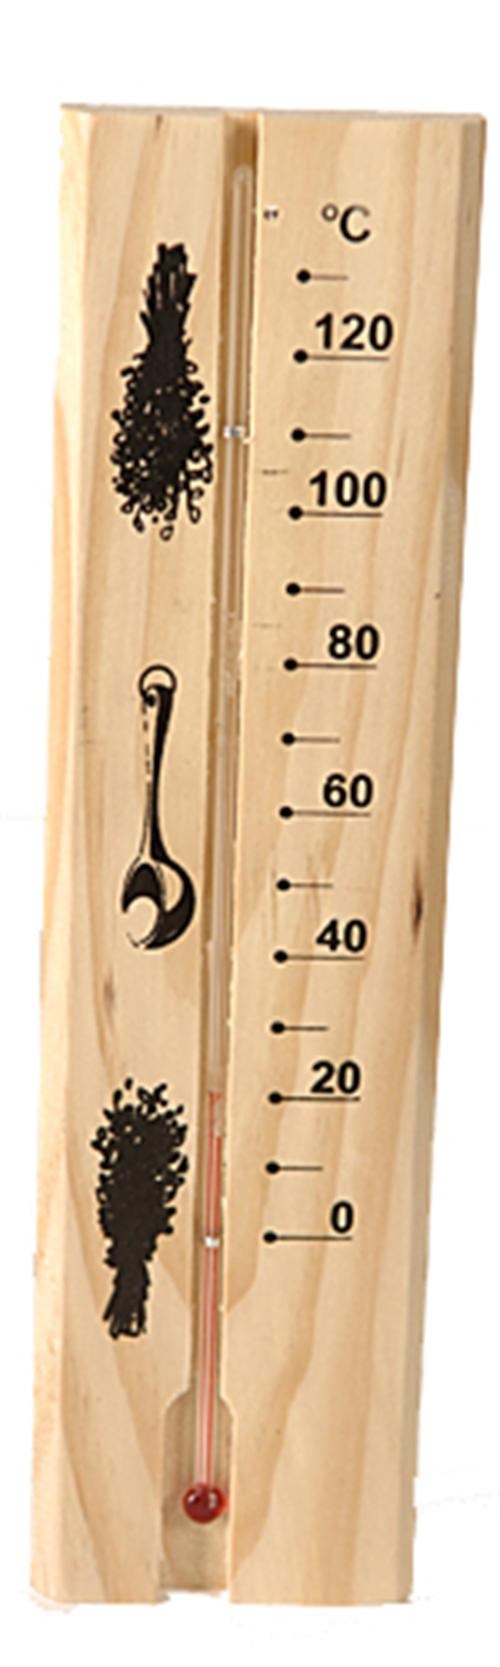 Bastutermometer i trä med vätskegradering